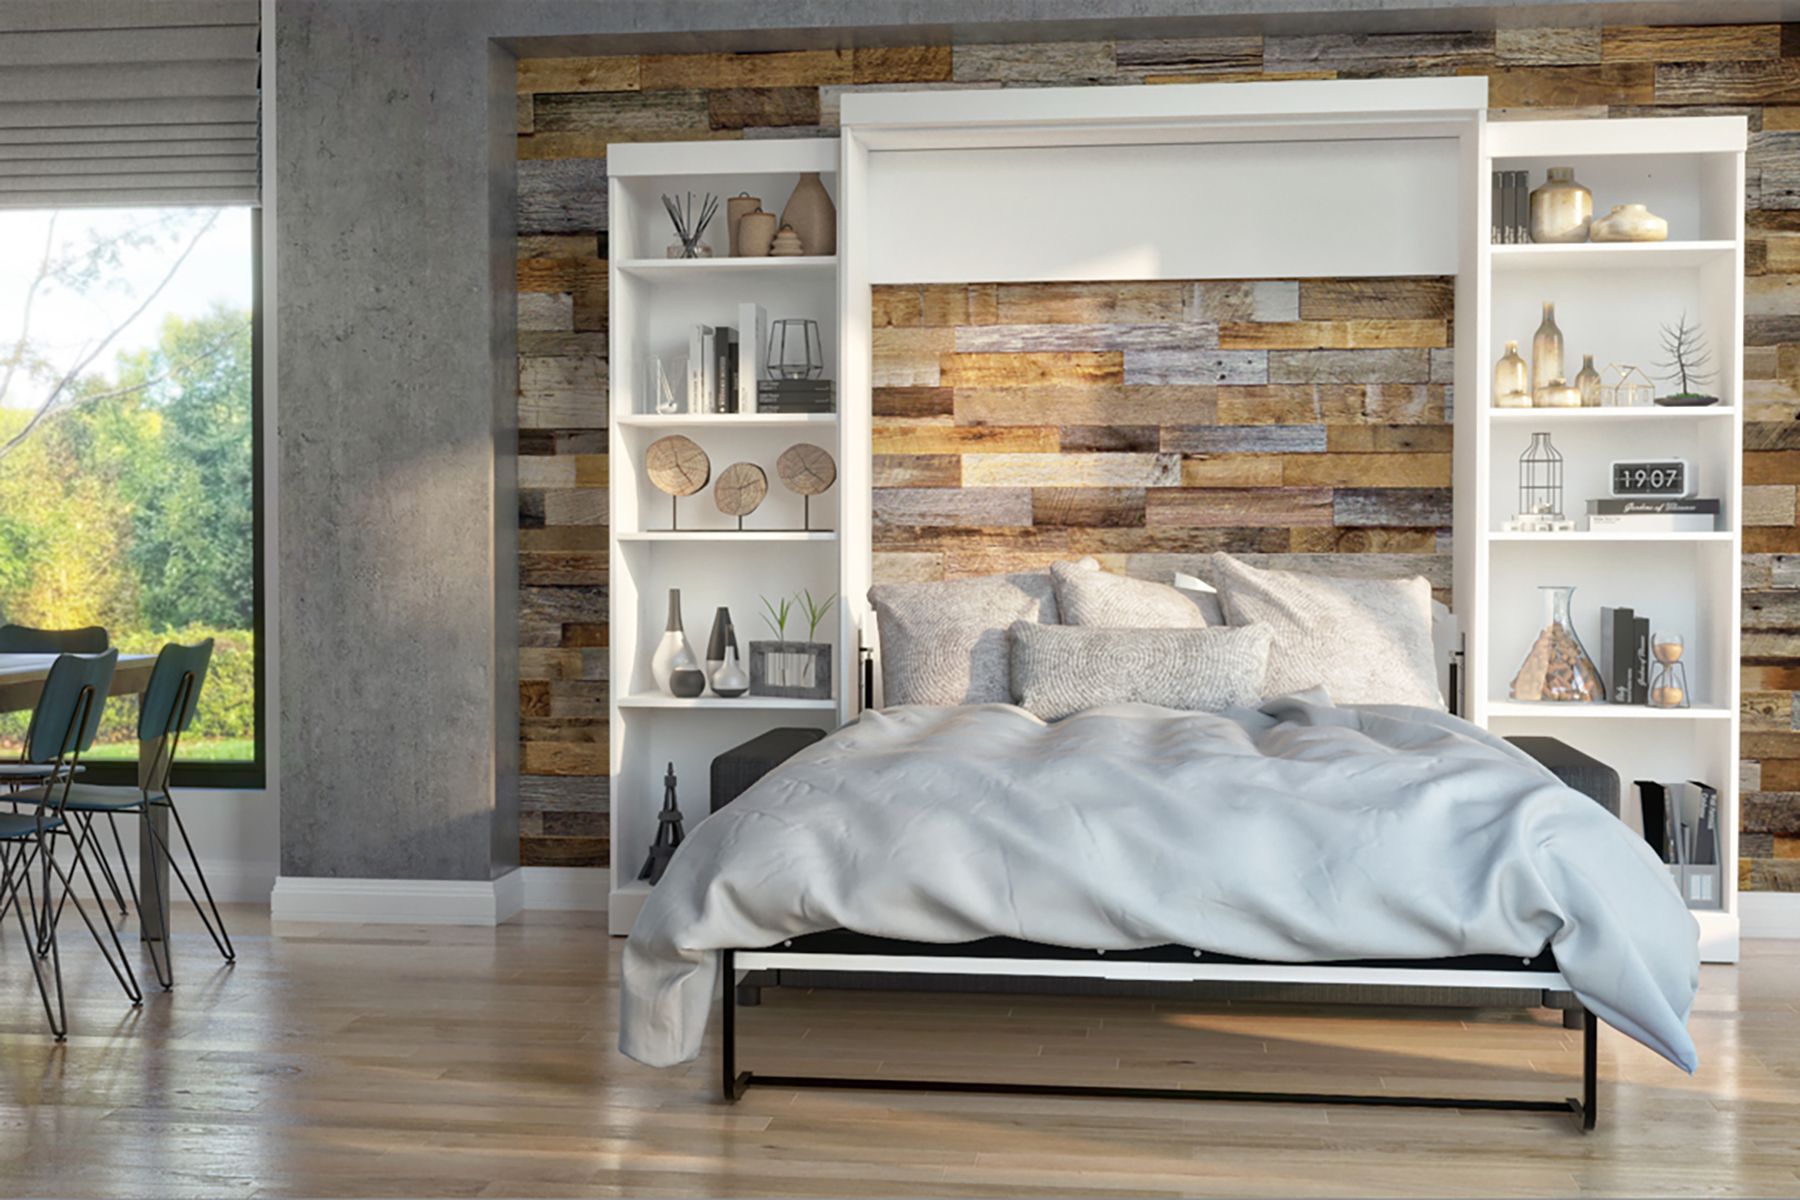 gevechten Maken Jongleren 5 Creative Murphy Bed Ideas for Your Bedroom - This Old House